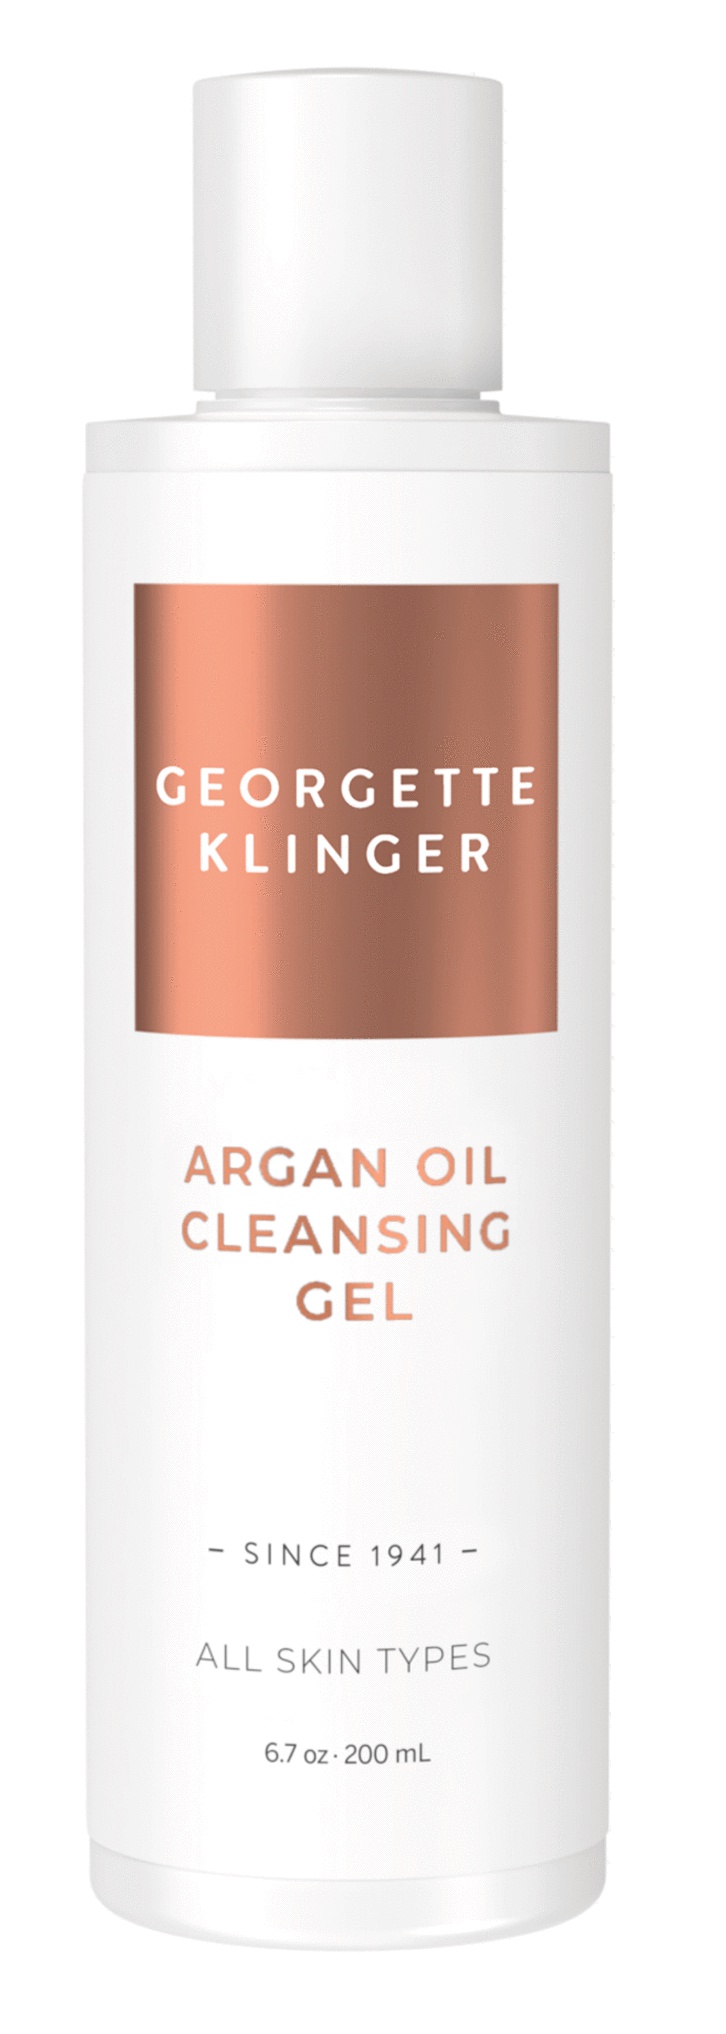 Georgette Klinger Argan Oil Cleansing Gel